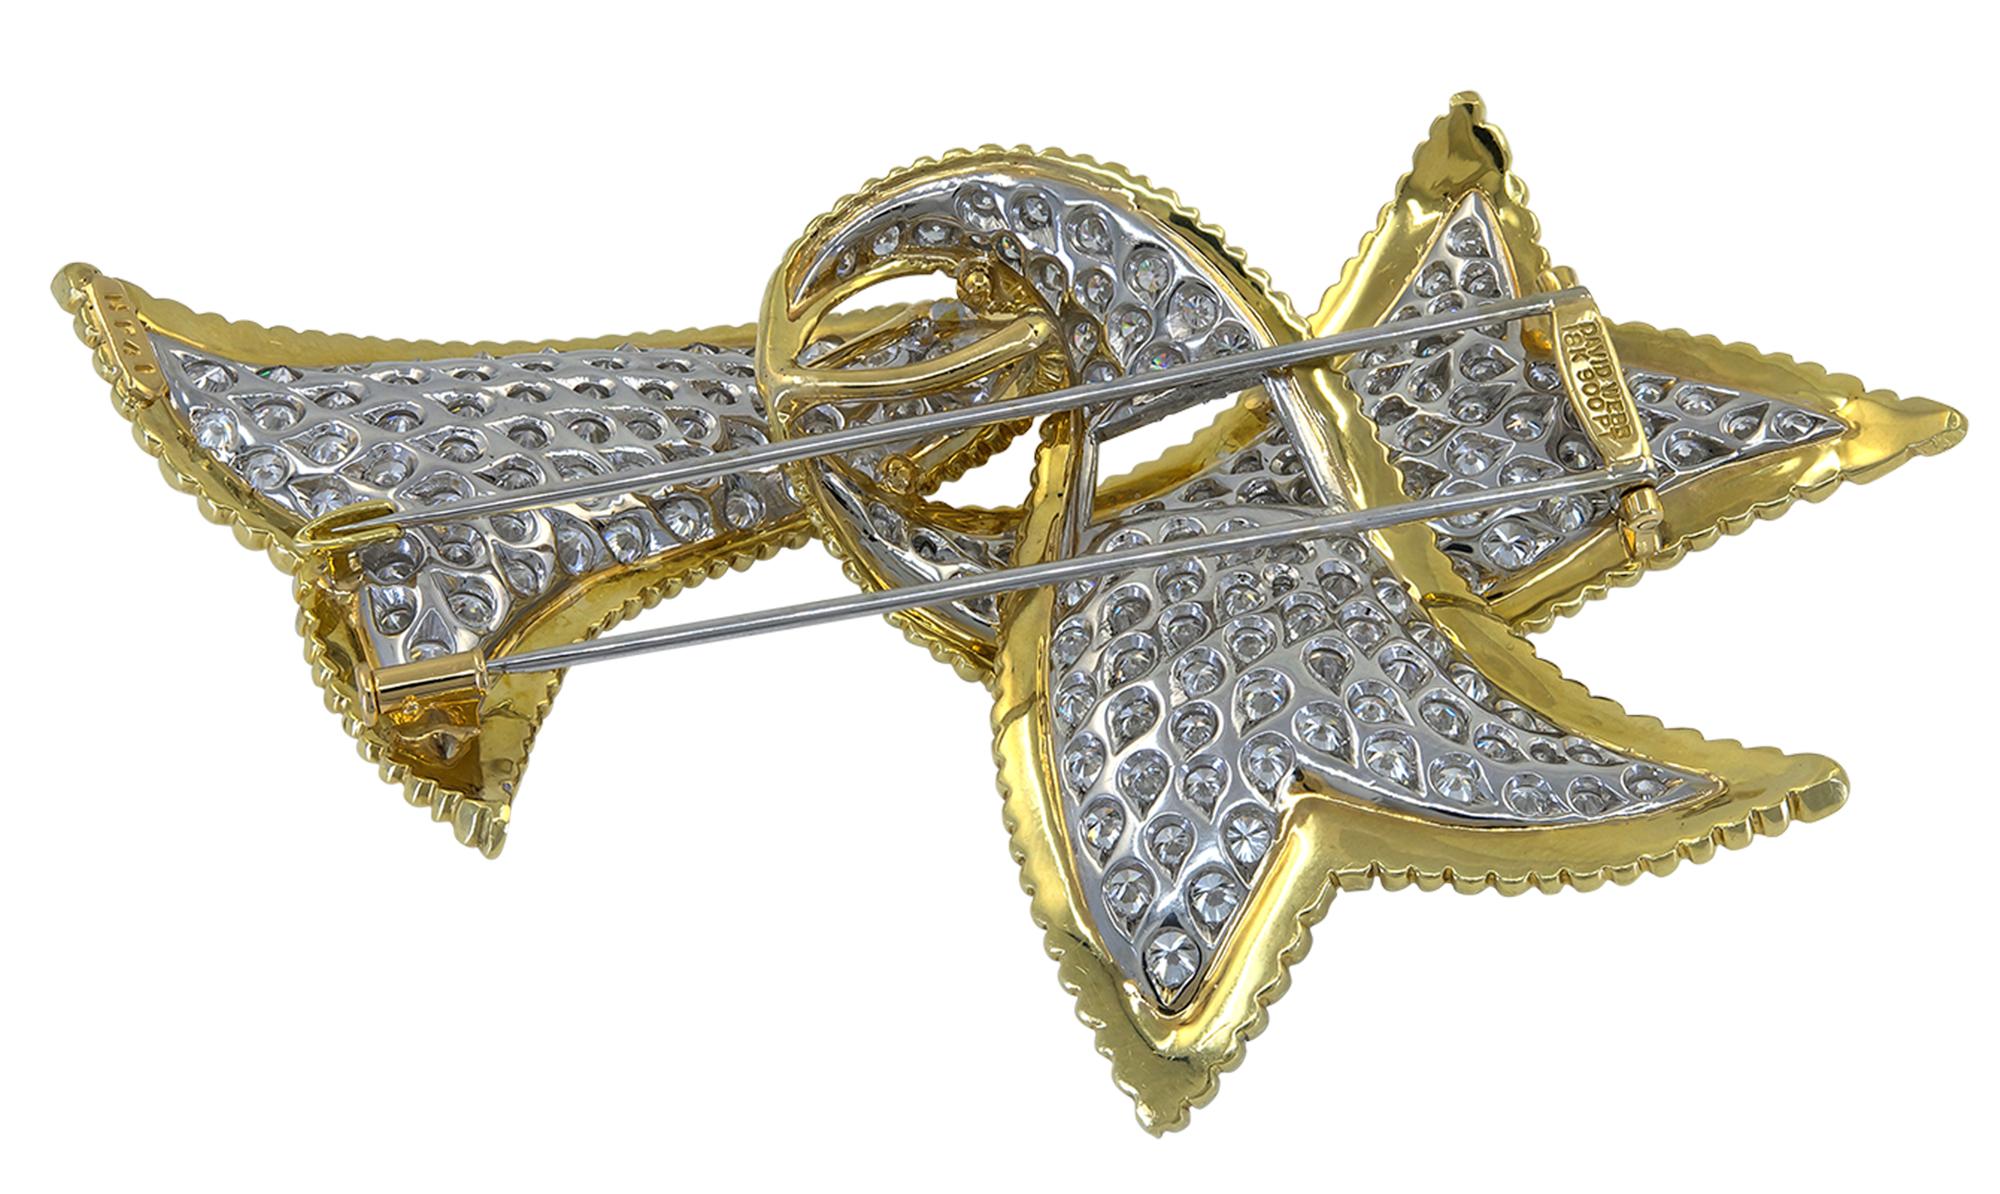 Élégante broche en forme de ruban créée par David Webb, comprenant environ 14,74 carats de diamants taille brillant, de l'or jaune 18K texturé et du platine.
Signé David Webb.
Un certificat d'authenticité est fourni.